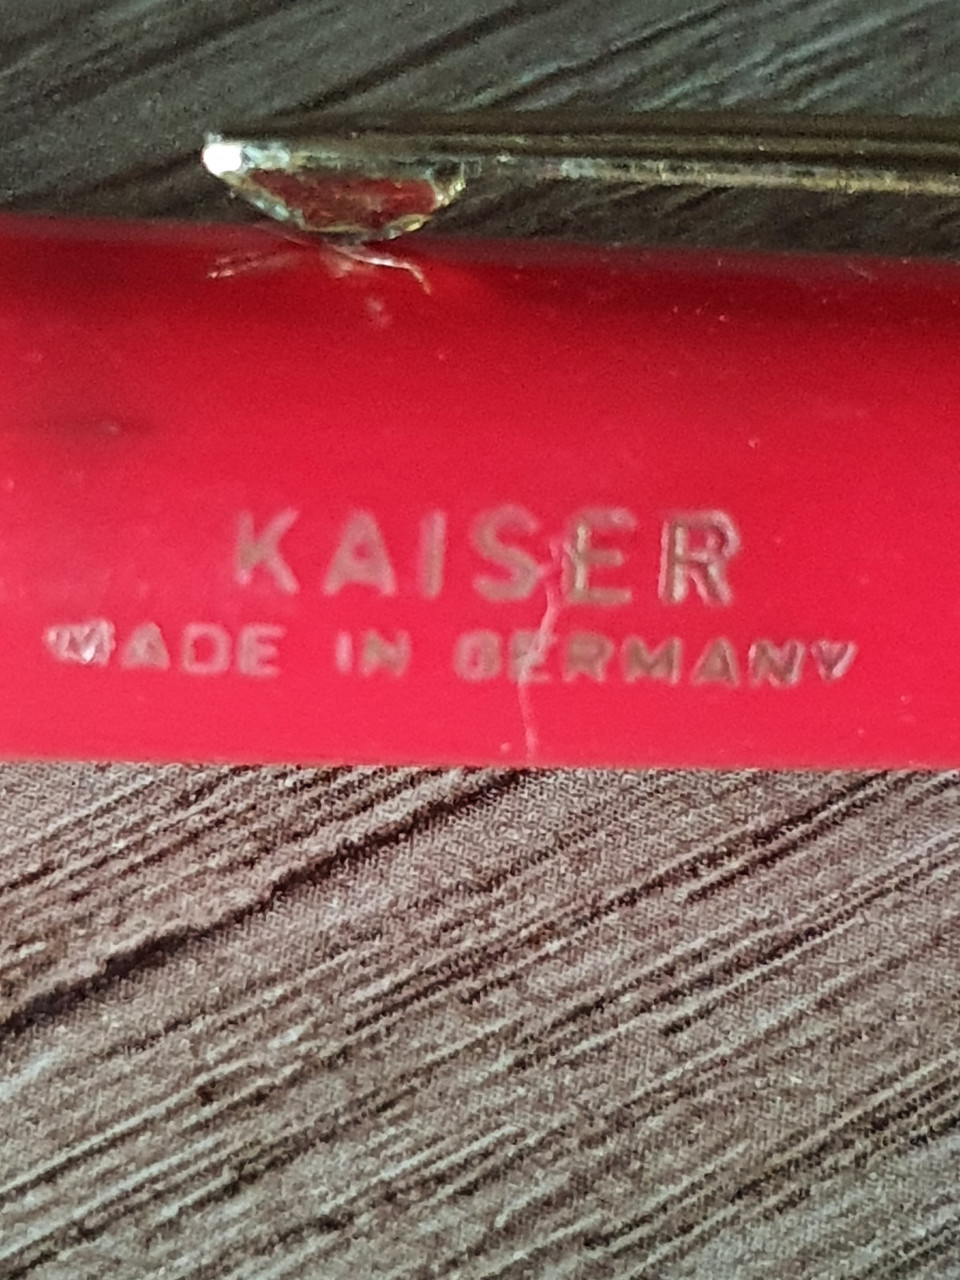 Heel mooie vintage Kaiser vulpen made in Germany, gouden nip aangeboden